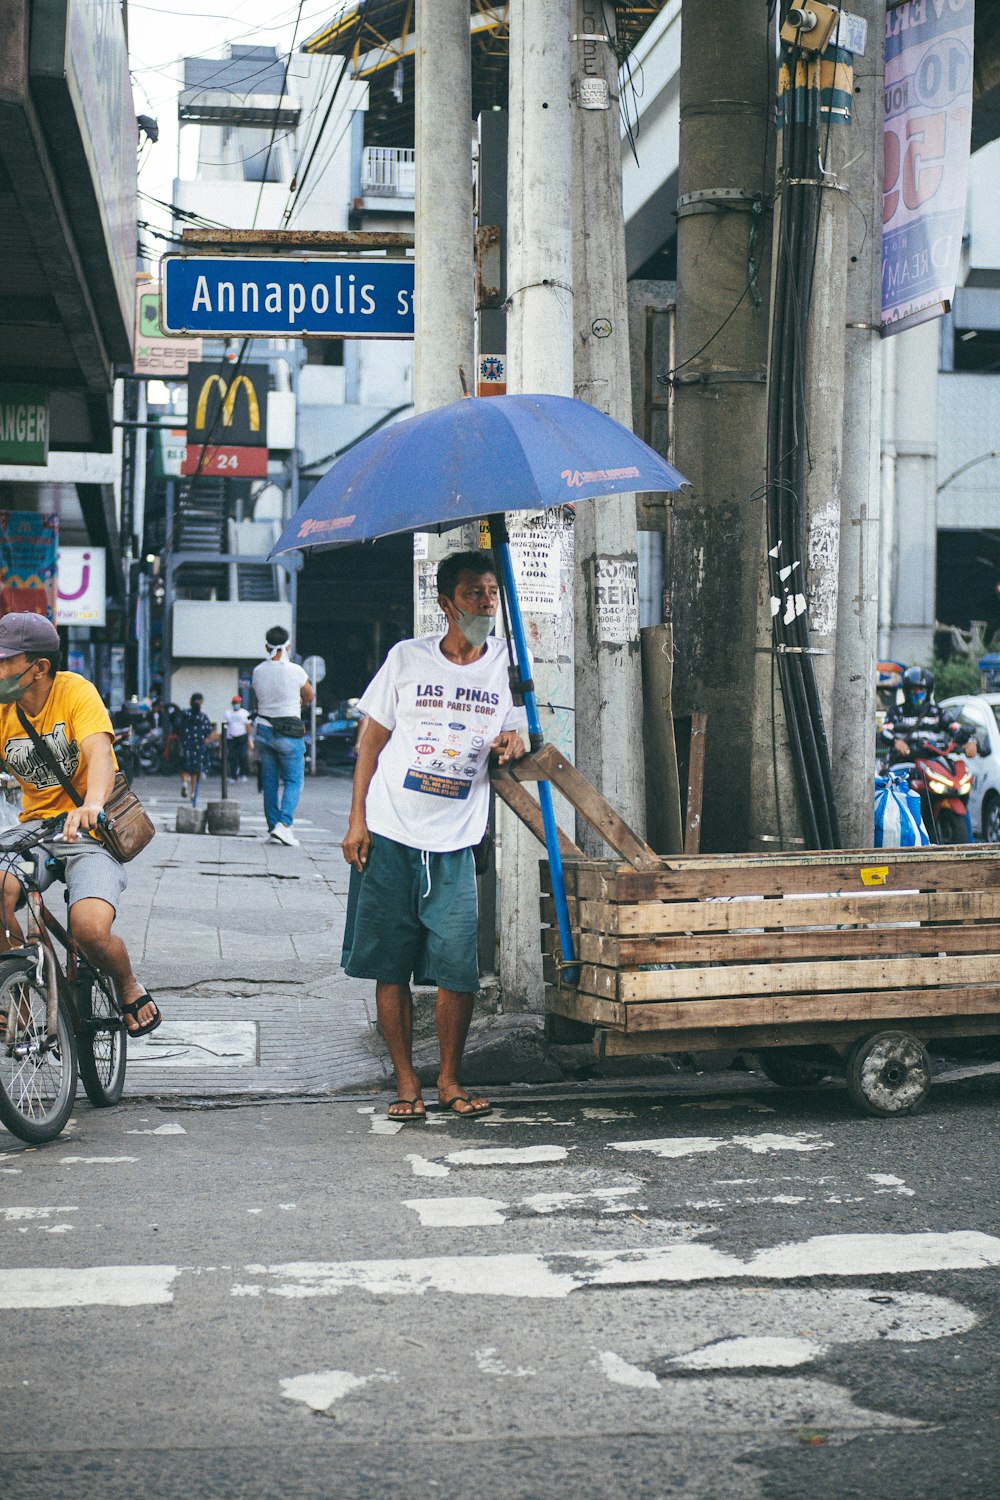 Un homme marchant dans une rue tenant un parapluie bleu